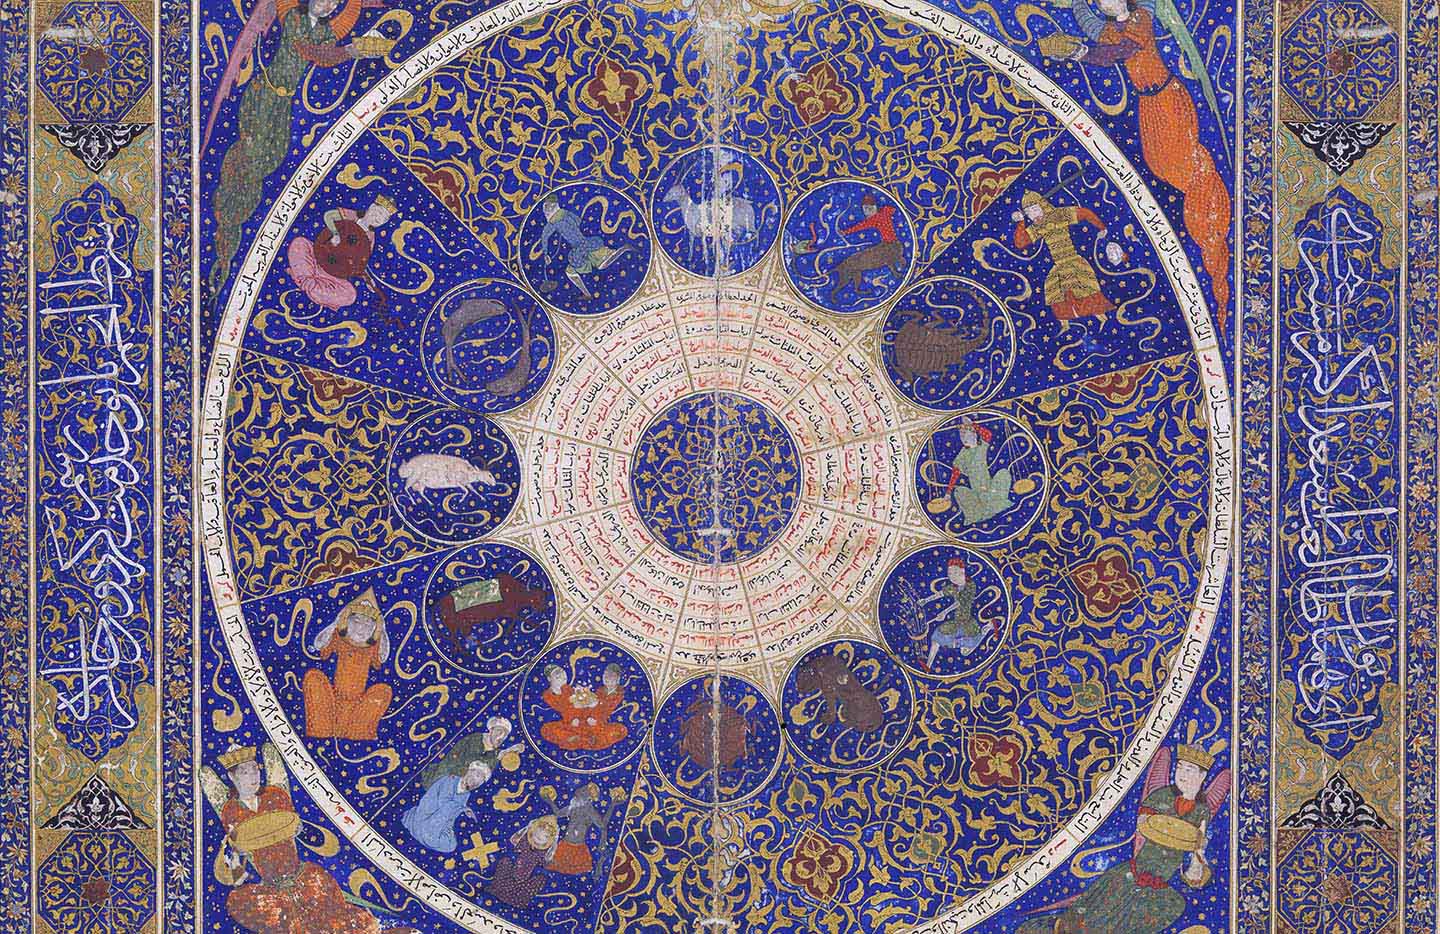 Horoscope of Prince Iskandar